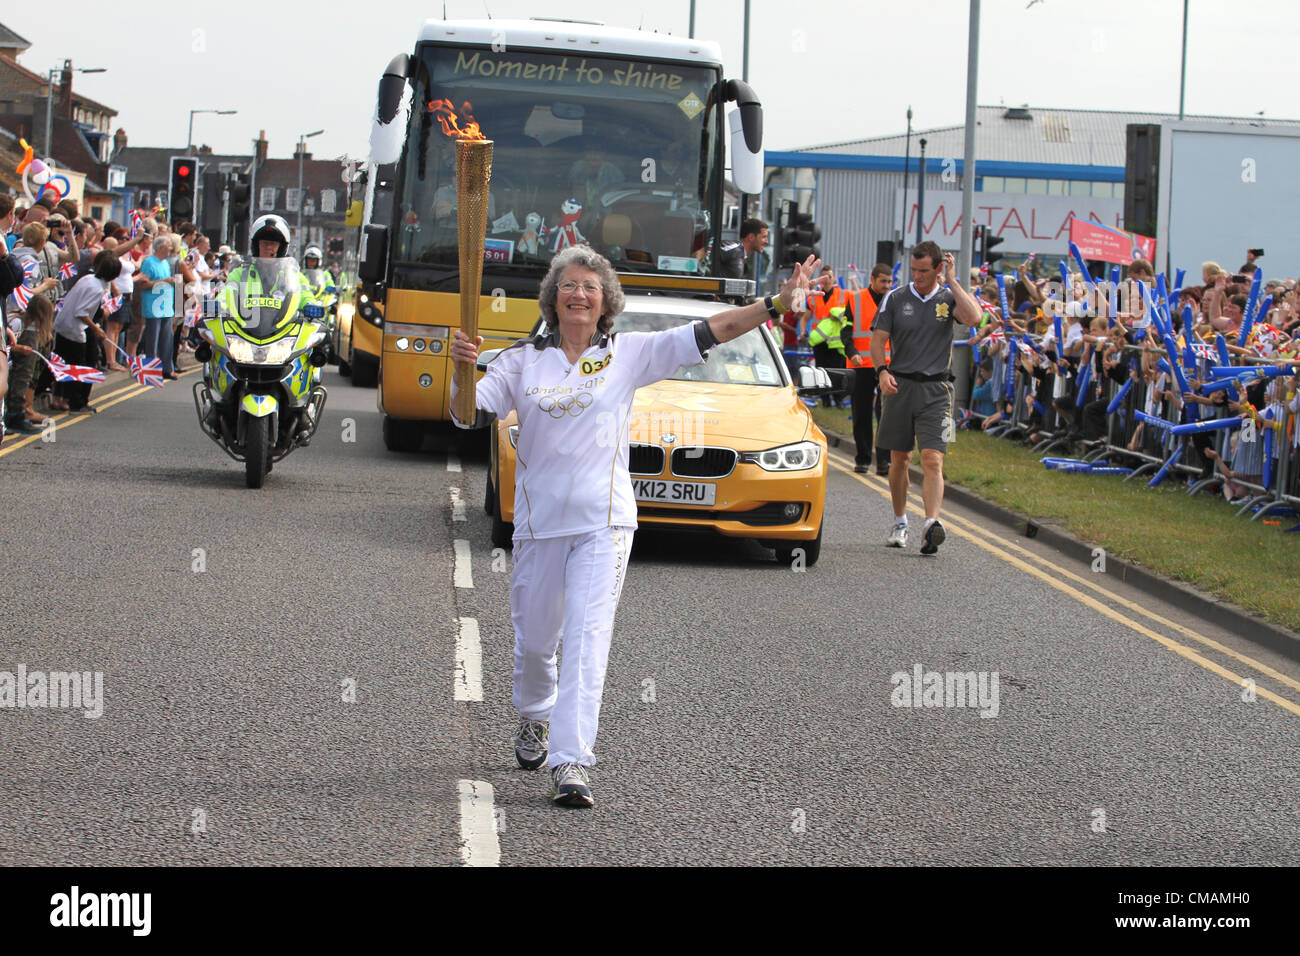 5 juillet 2012,relais du flambeau olympique par Daphne Hathaway l'âge de 76 ans à partir de la torche olympique à faire Neatishead Great Yarmouth, Norfolk, UK Banque D'Images